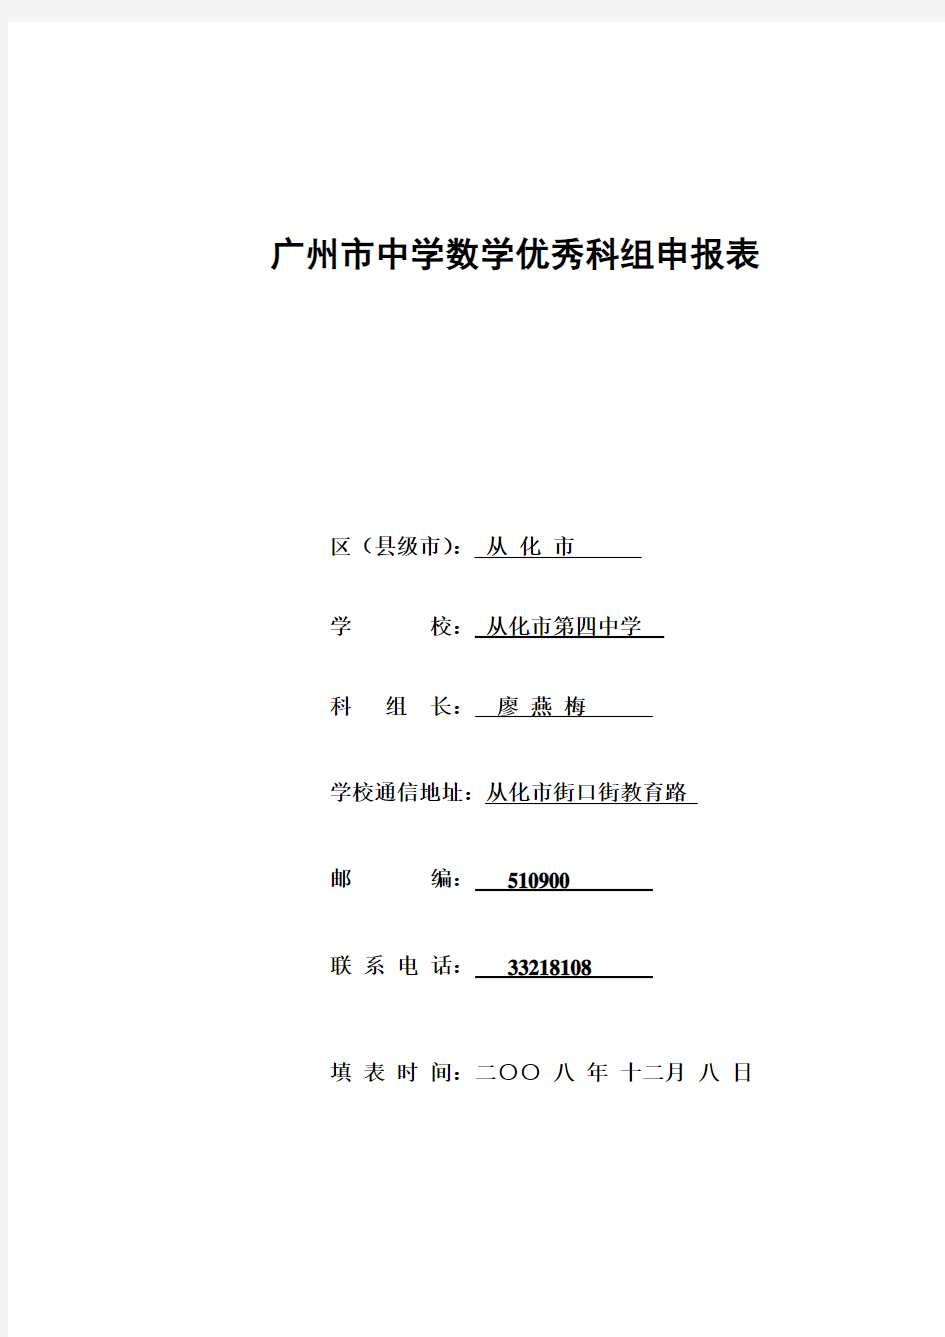 广州市中学数学优秀科组申报表